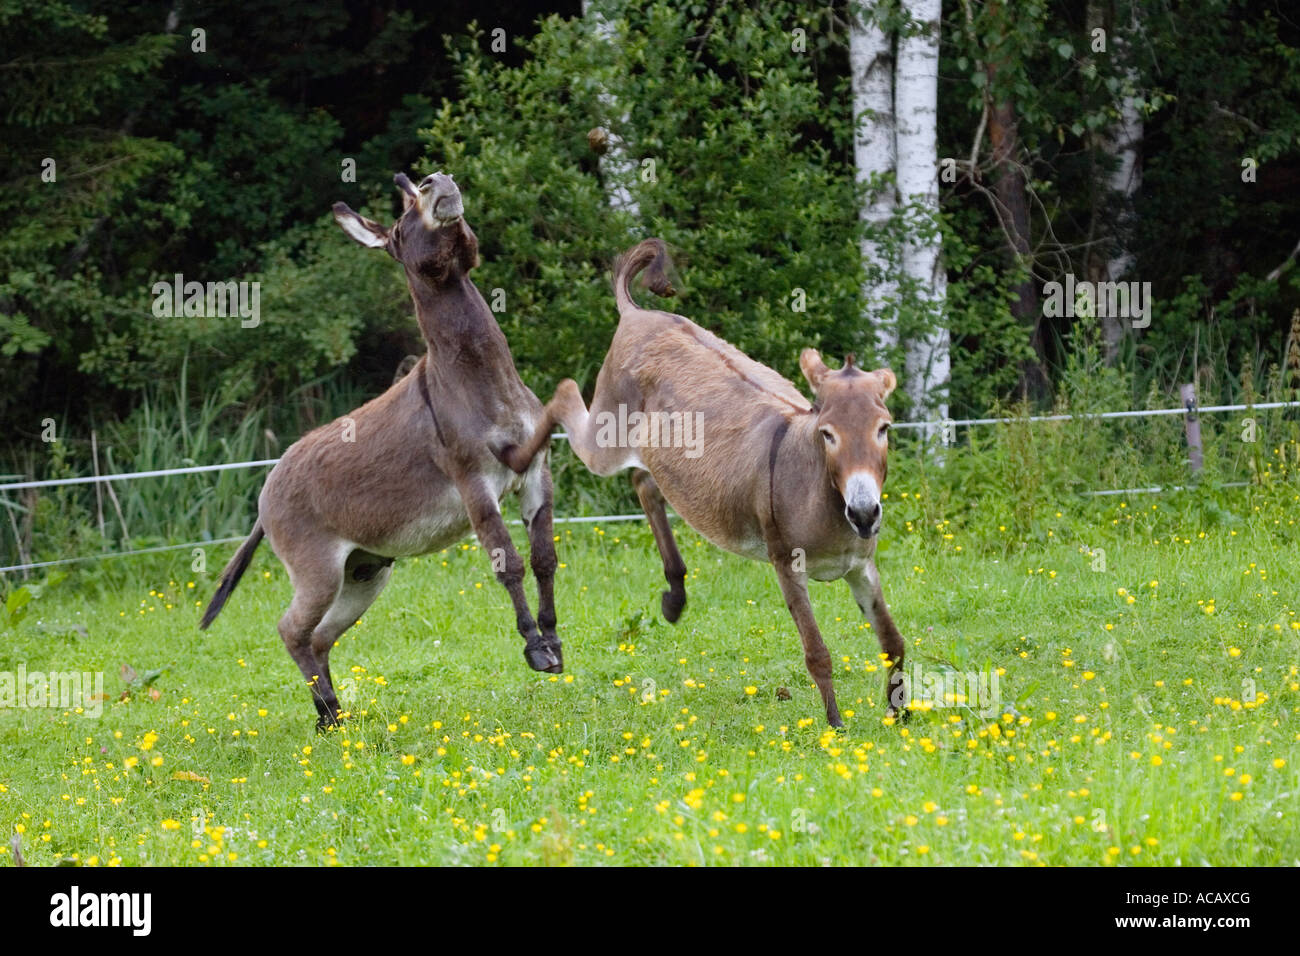 Donkey kicking against male, Equus asinus, Bavaria, Germany Stock Photo